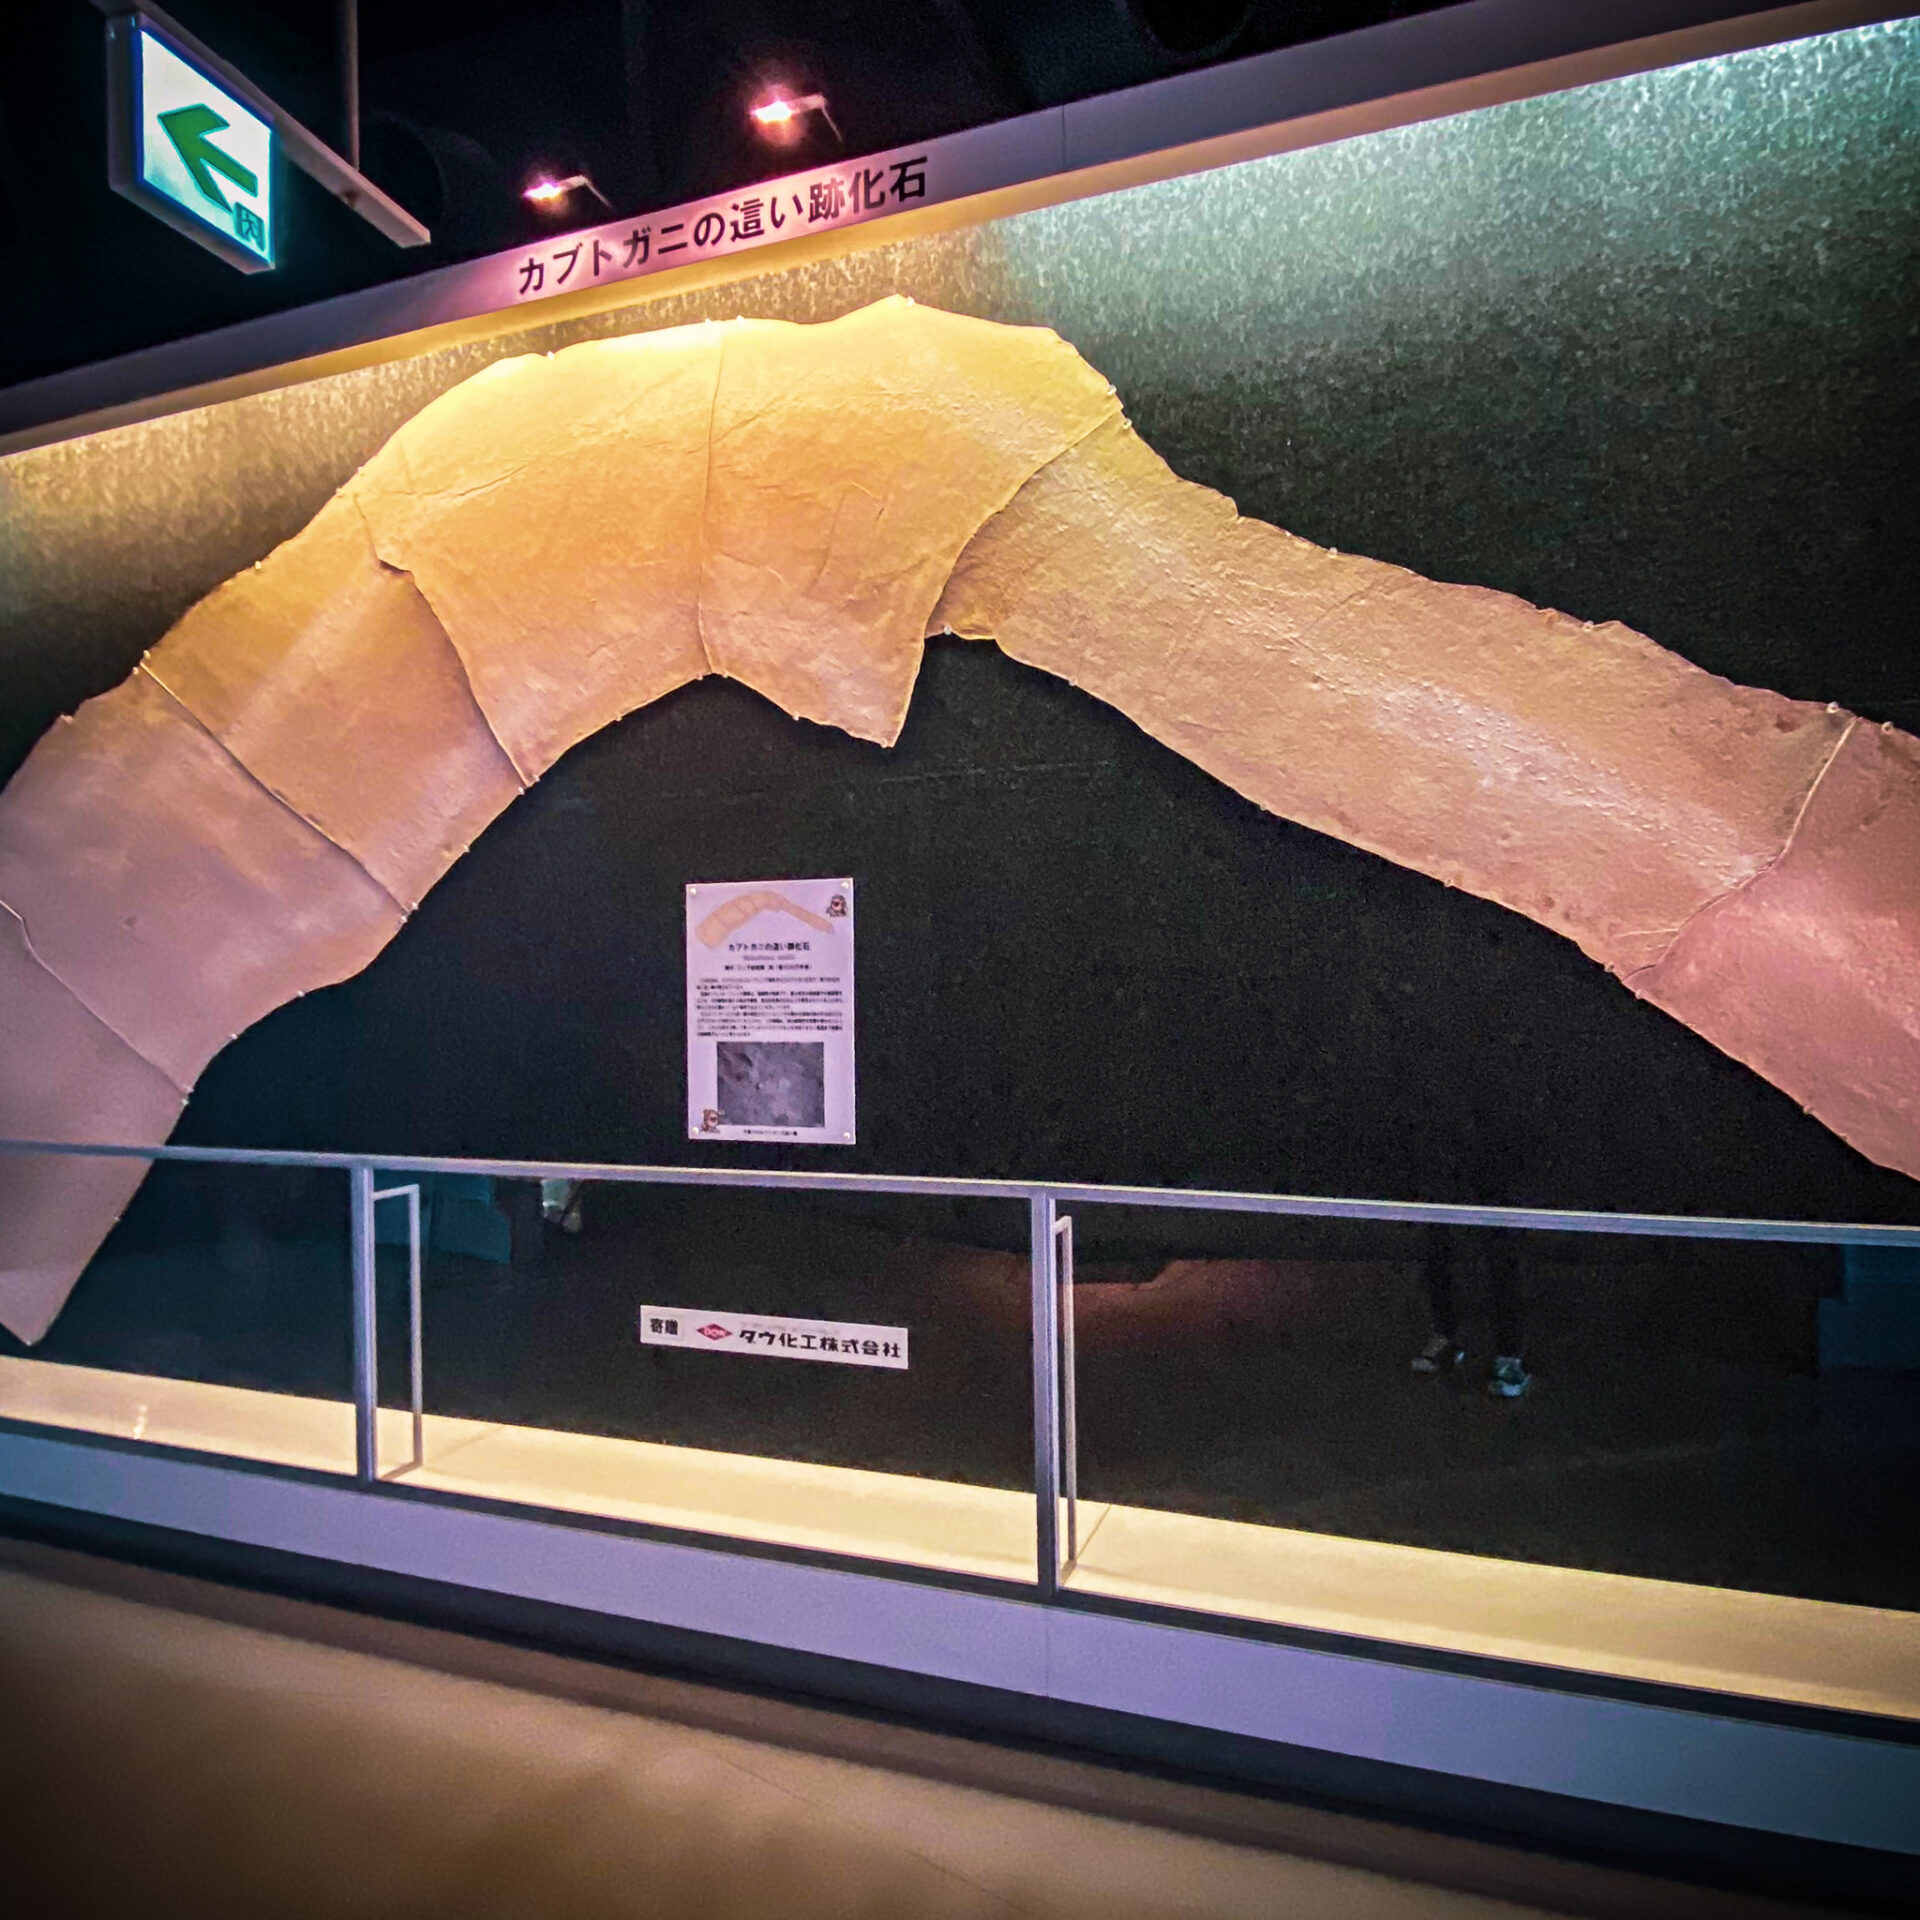 カブトガニ博物館
カブトガニの這い跡の化石